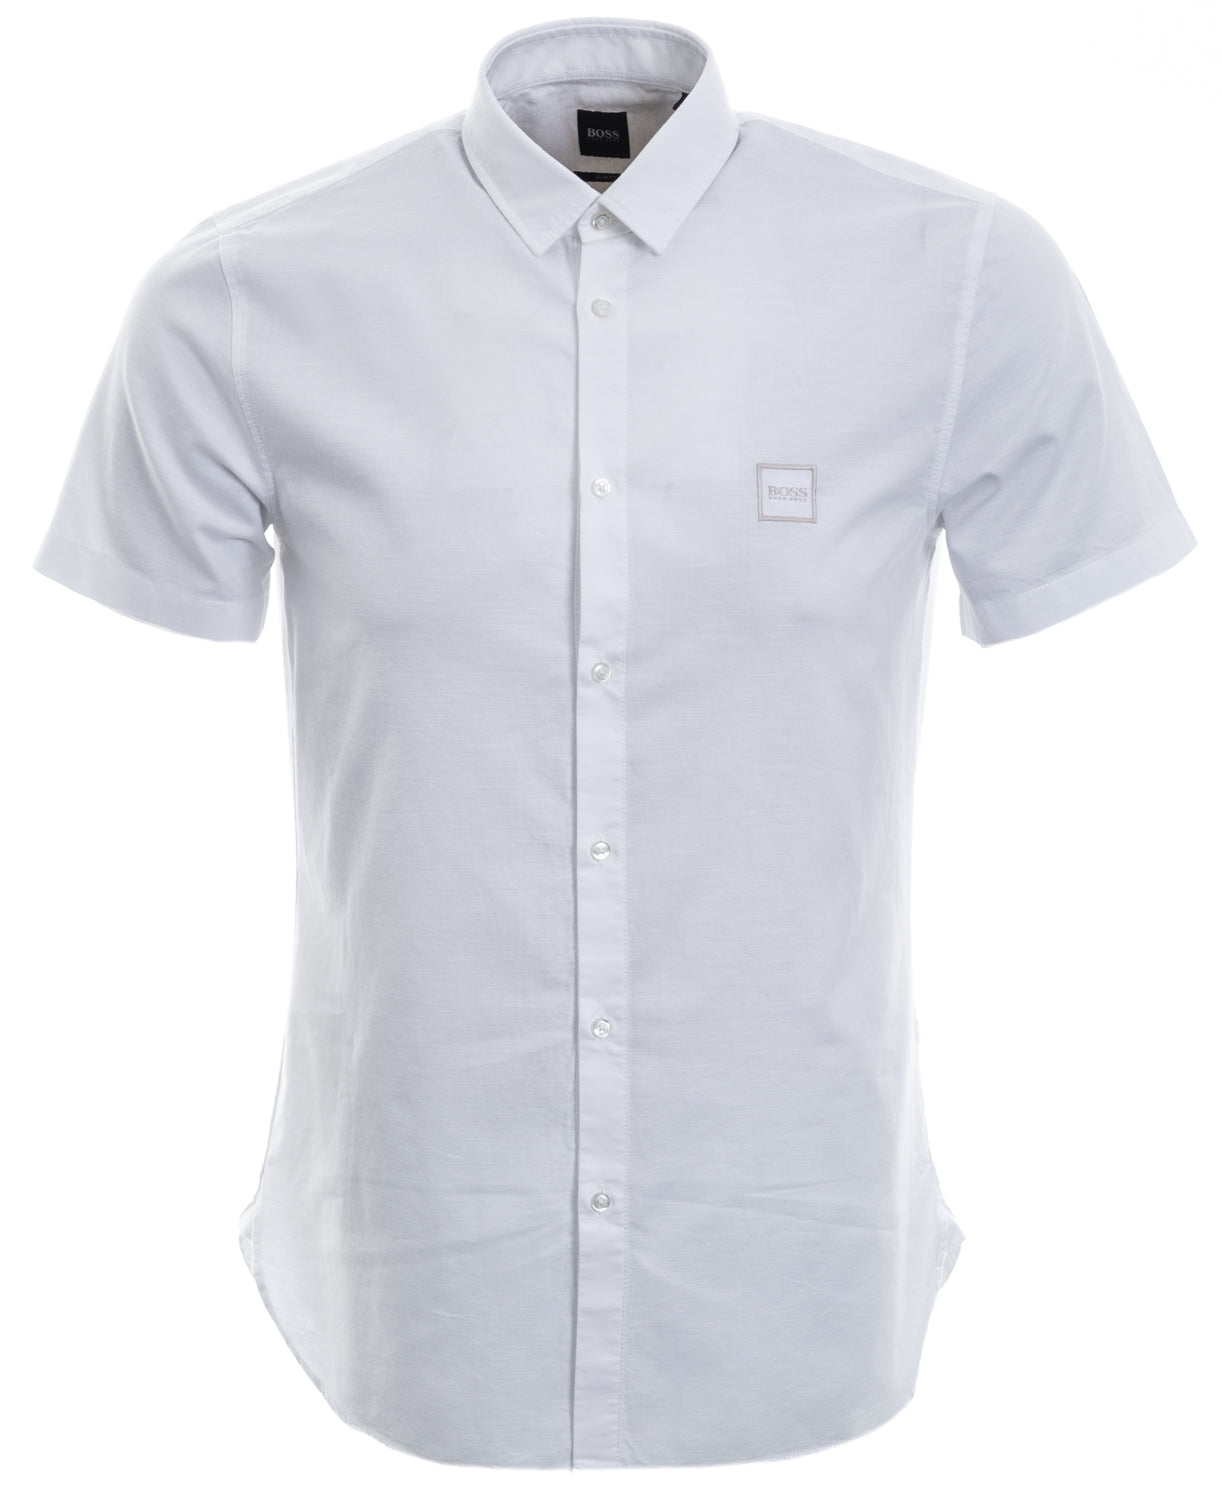 Hugo Boss Magneton Slim Fit Short Sleeve White Shirt L White 